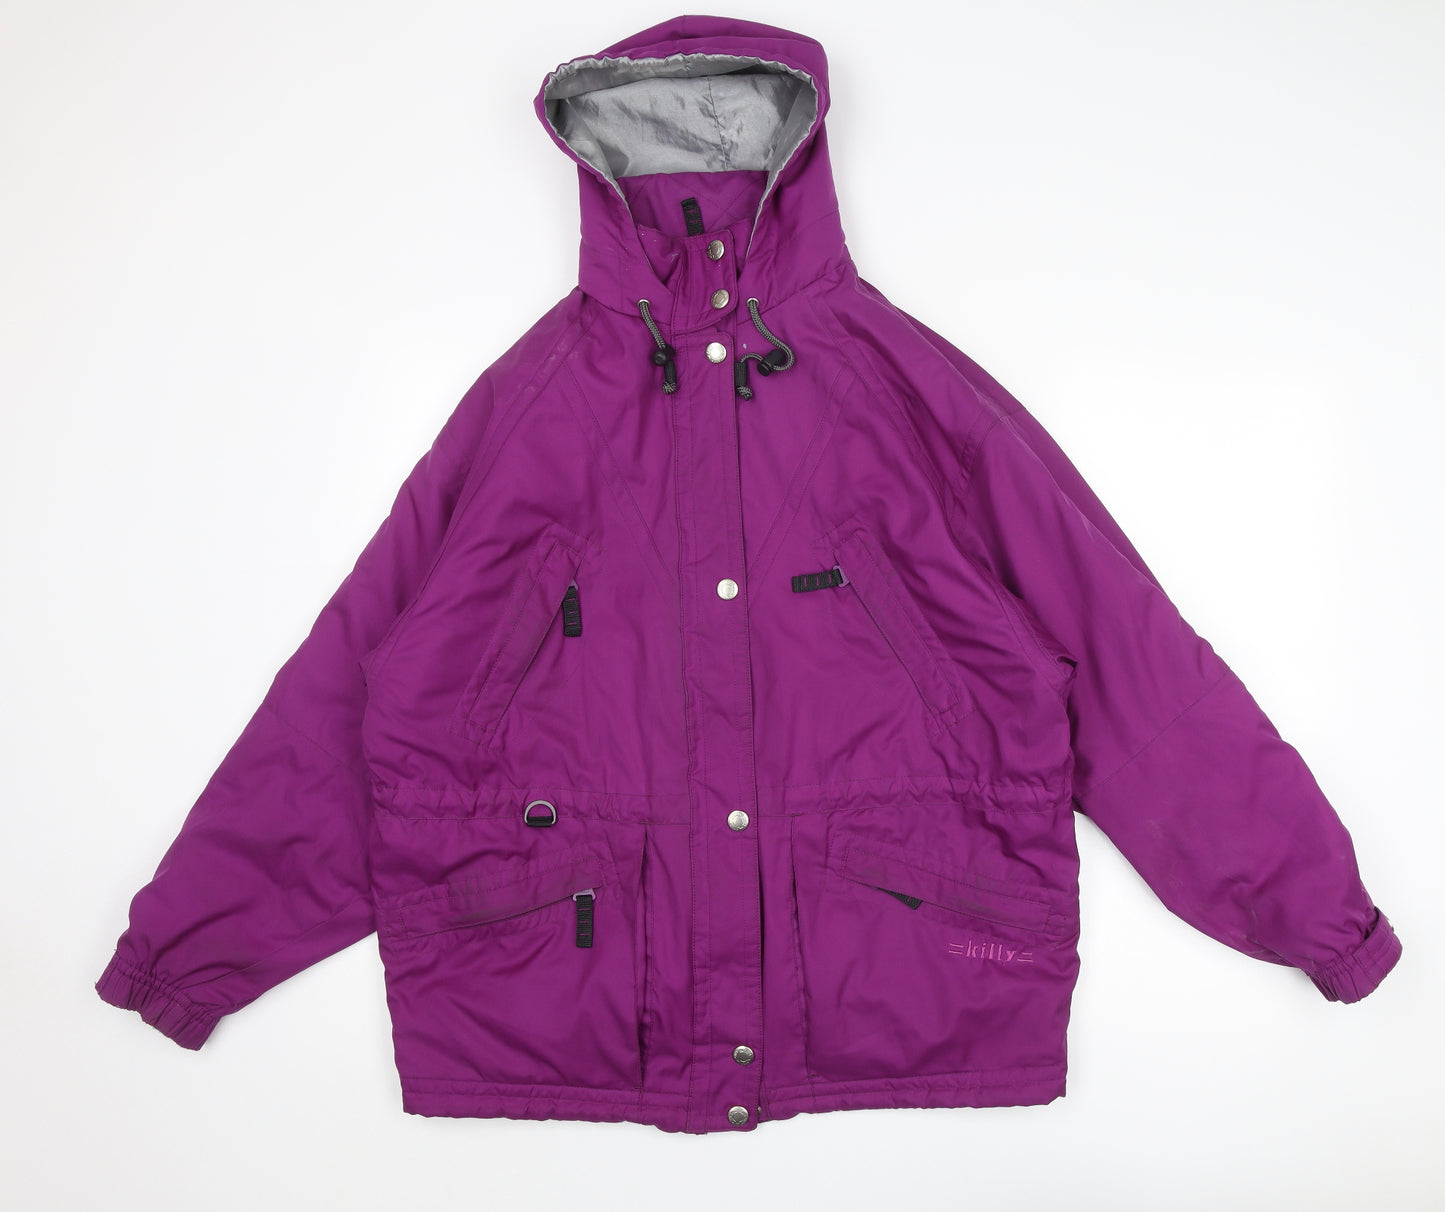 Killy Womens Purple Windbreaker Jacket Size 12 Zip